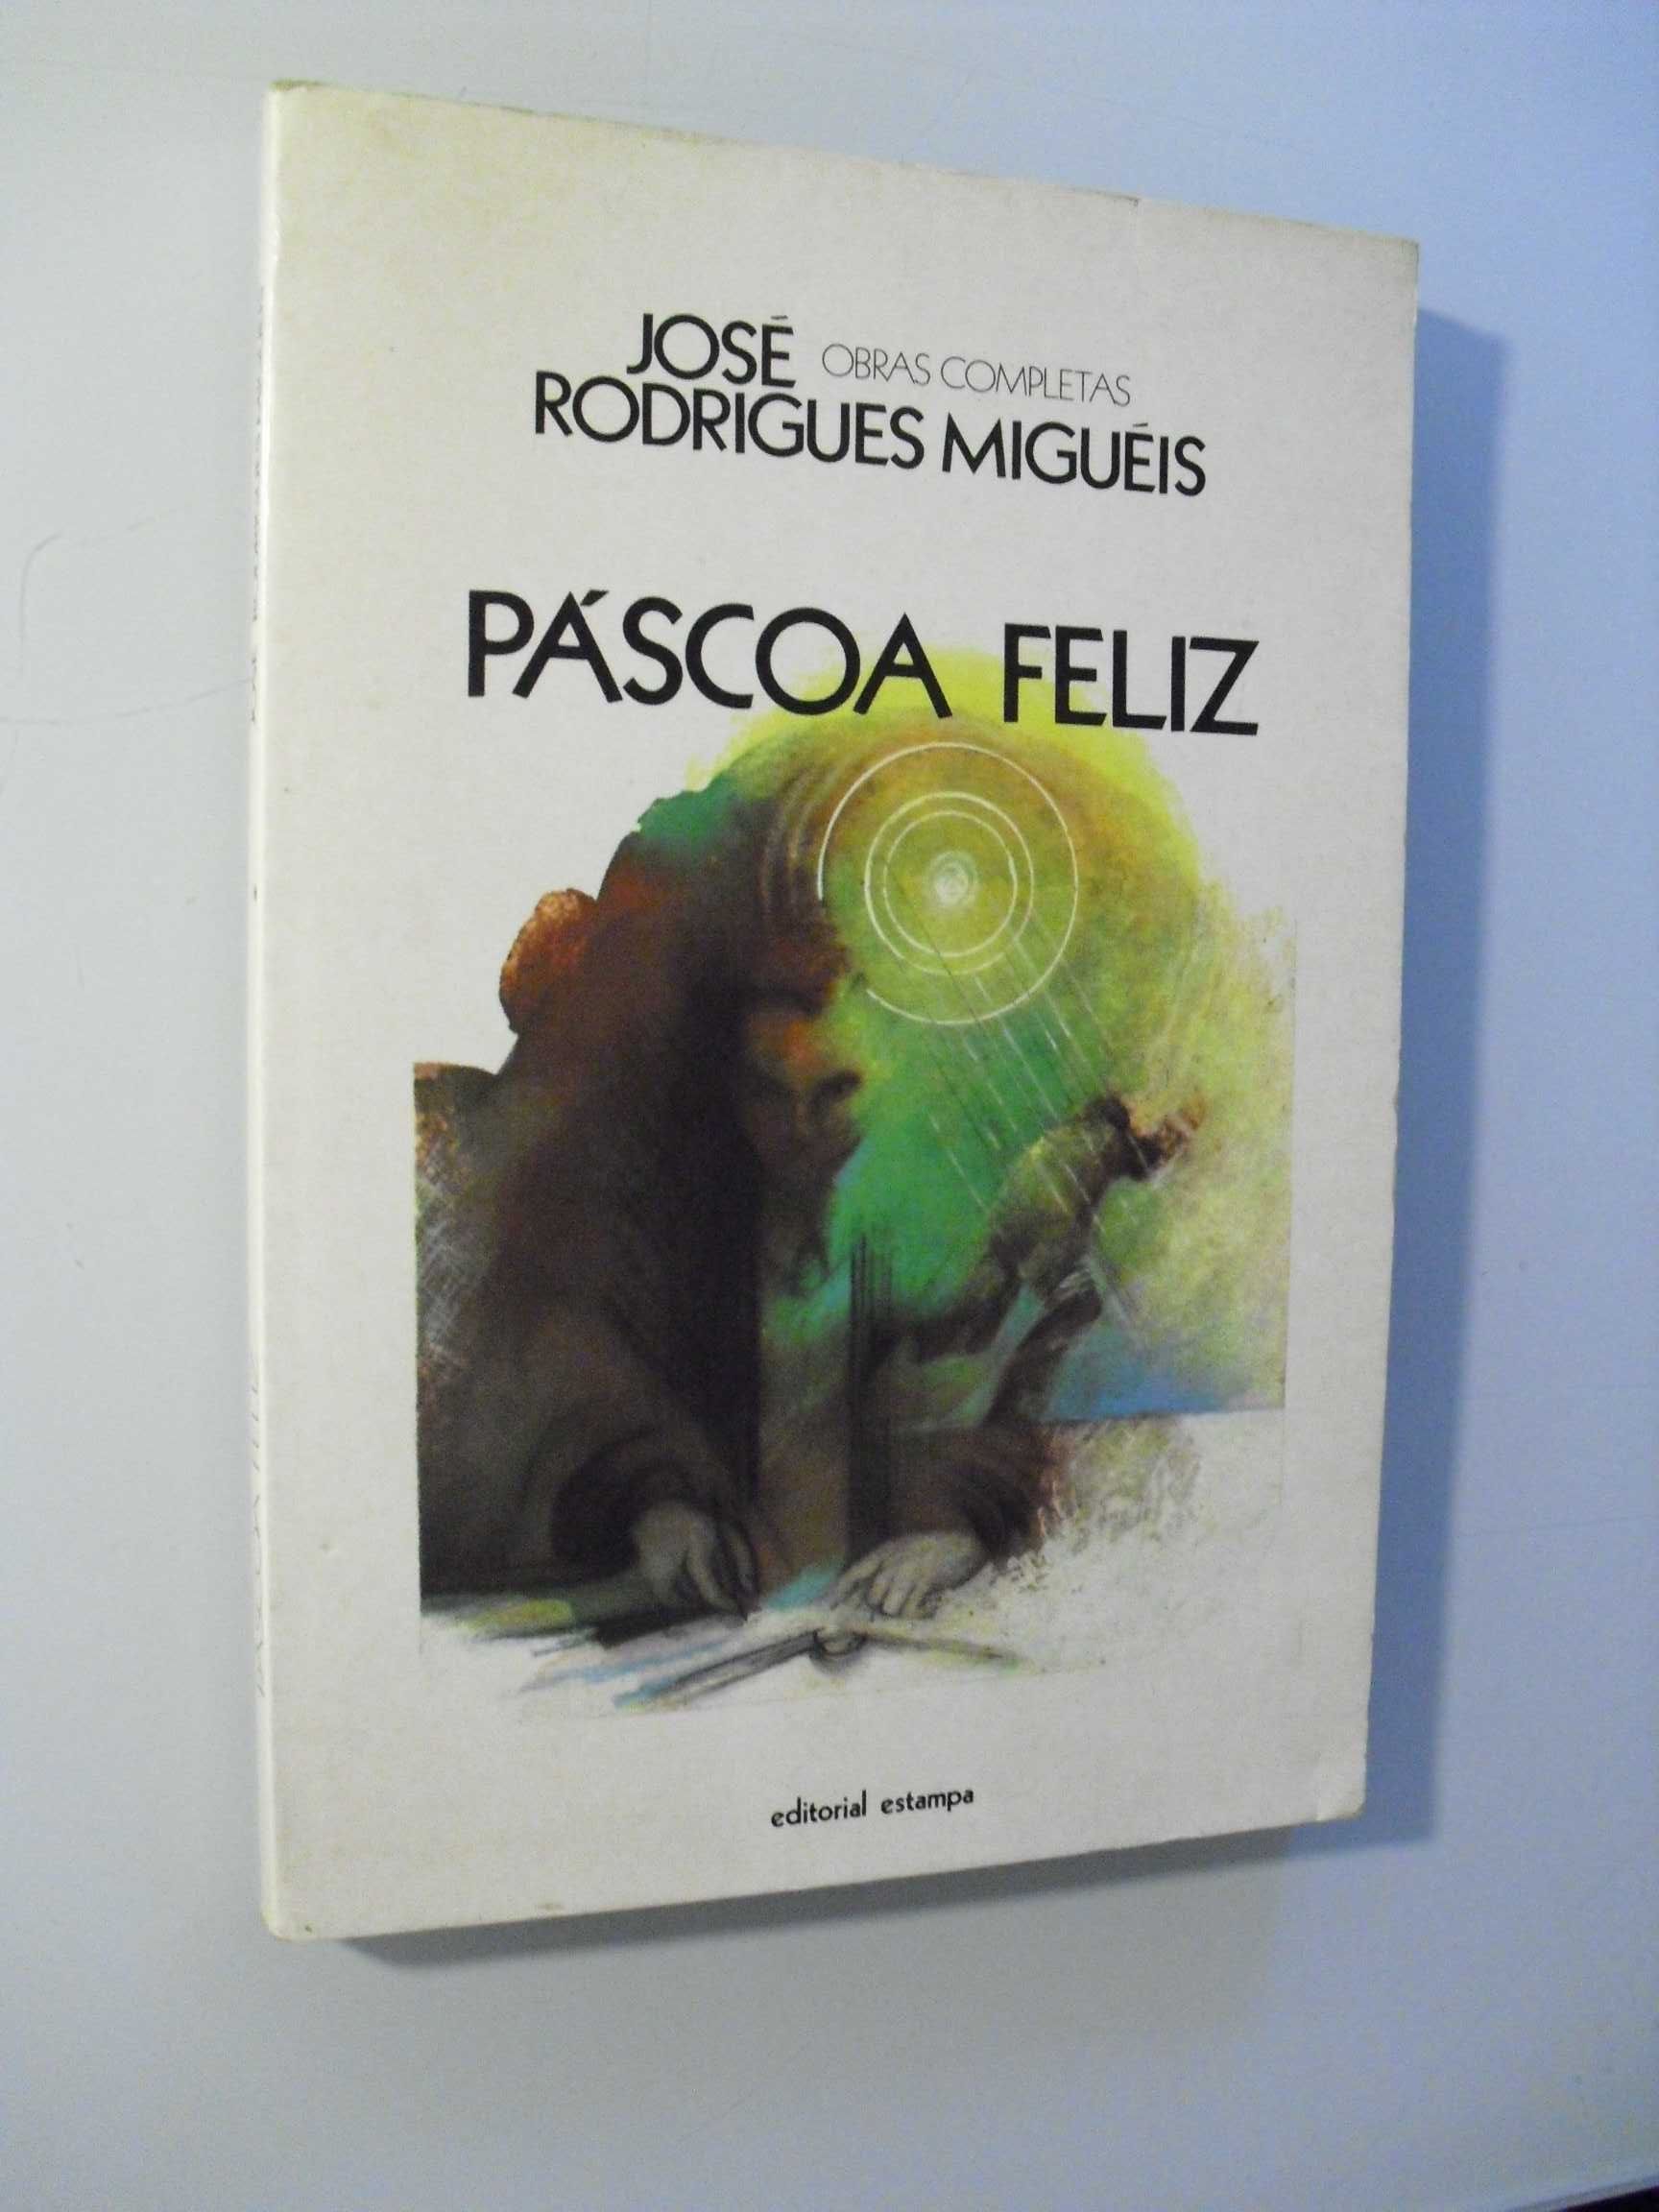 Migueis (José Rodrigues);Páscoa Feliz;P.Incluídos